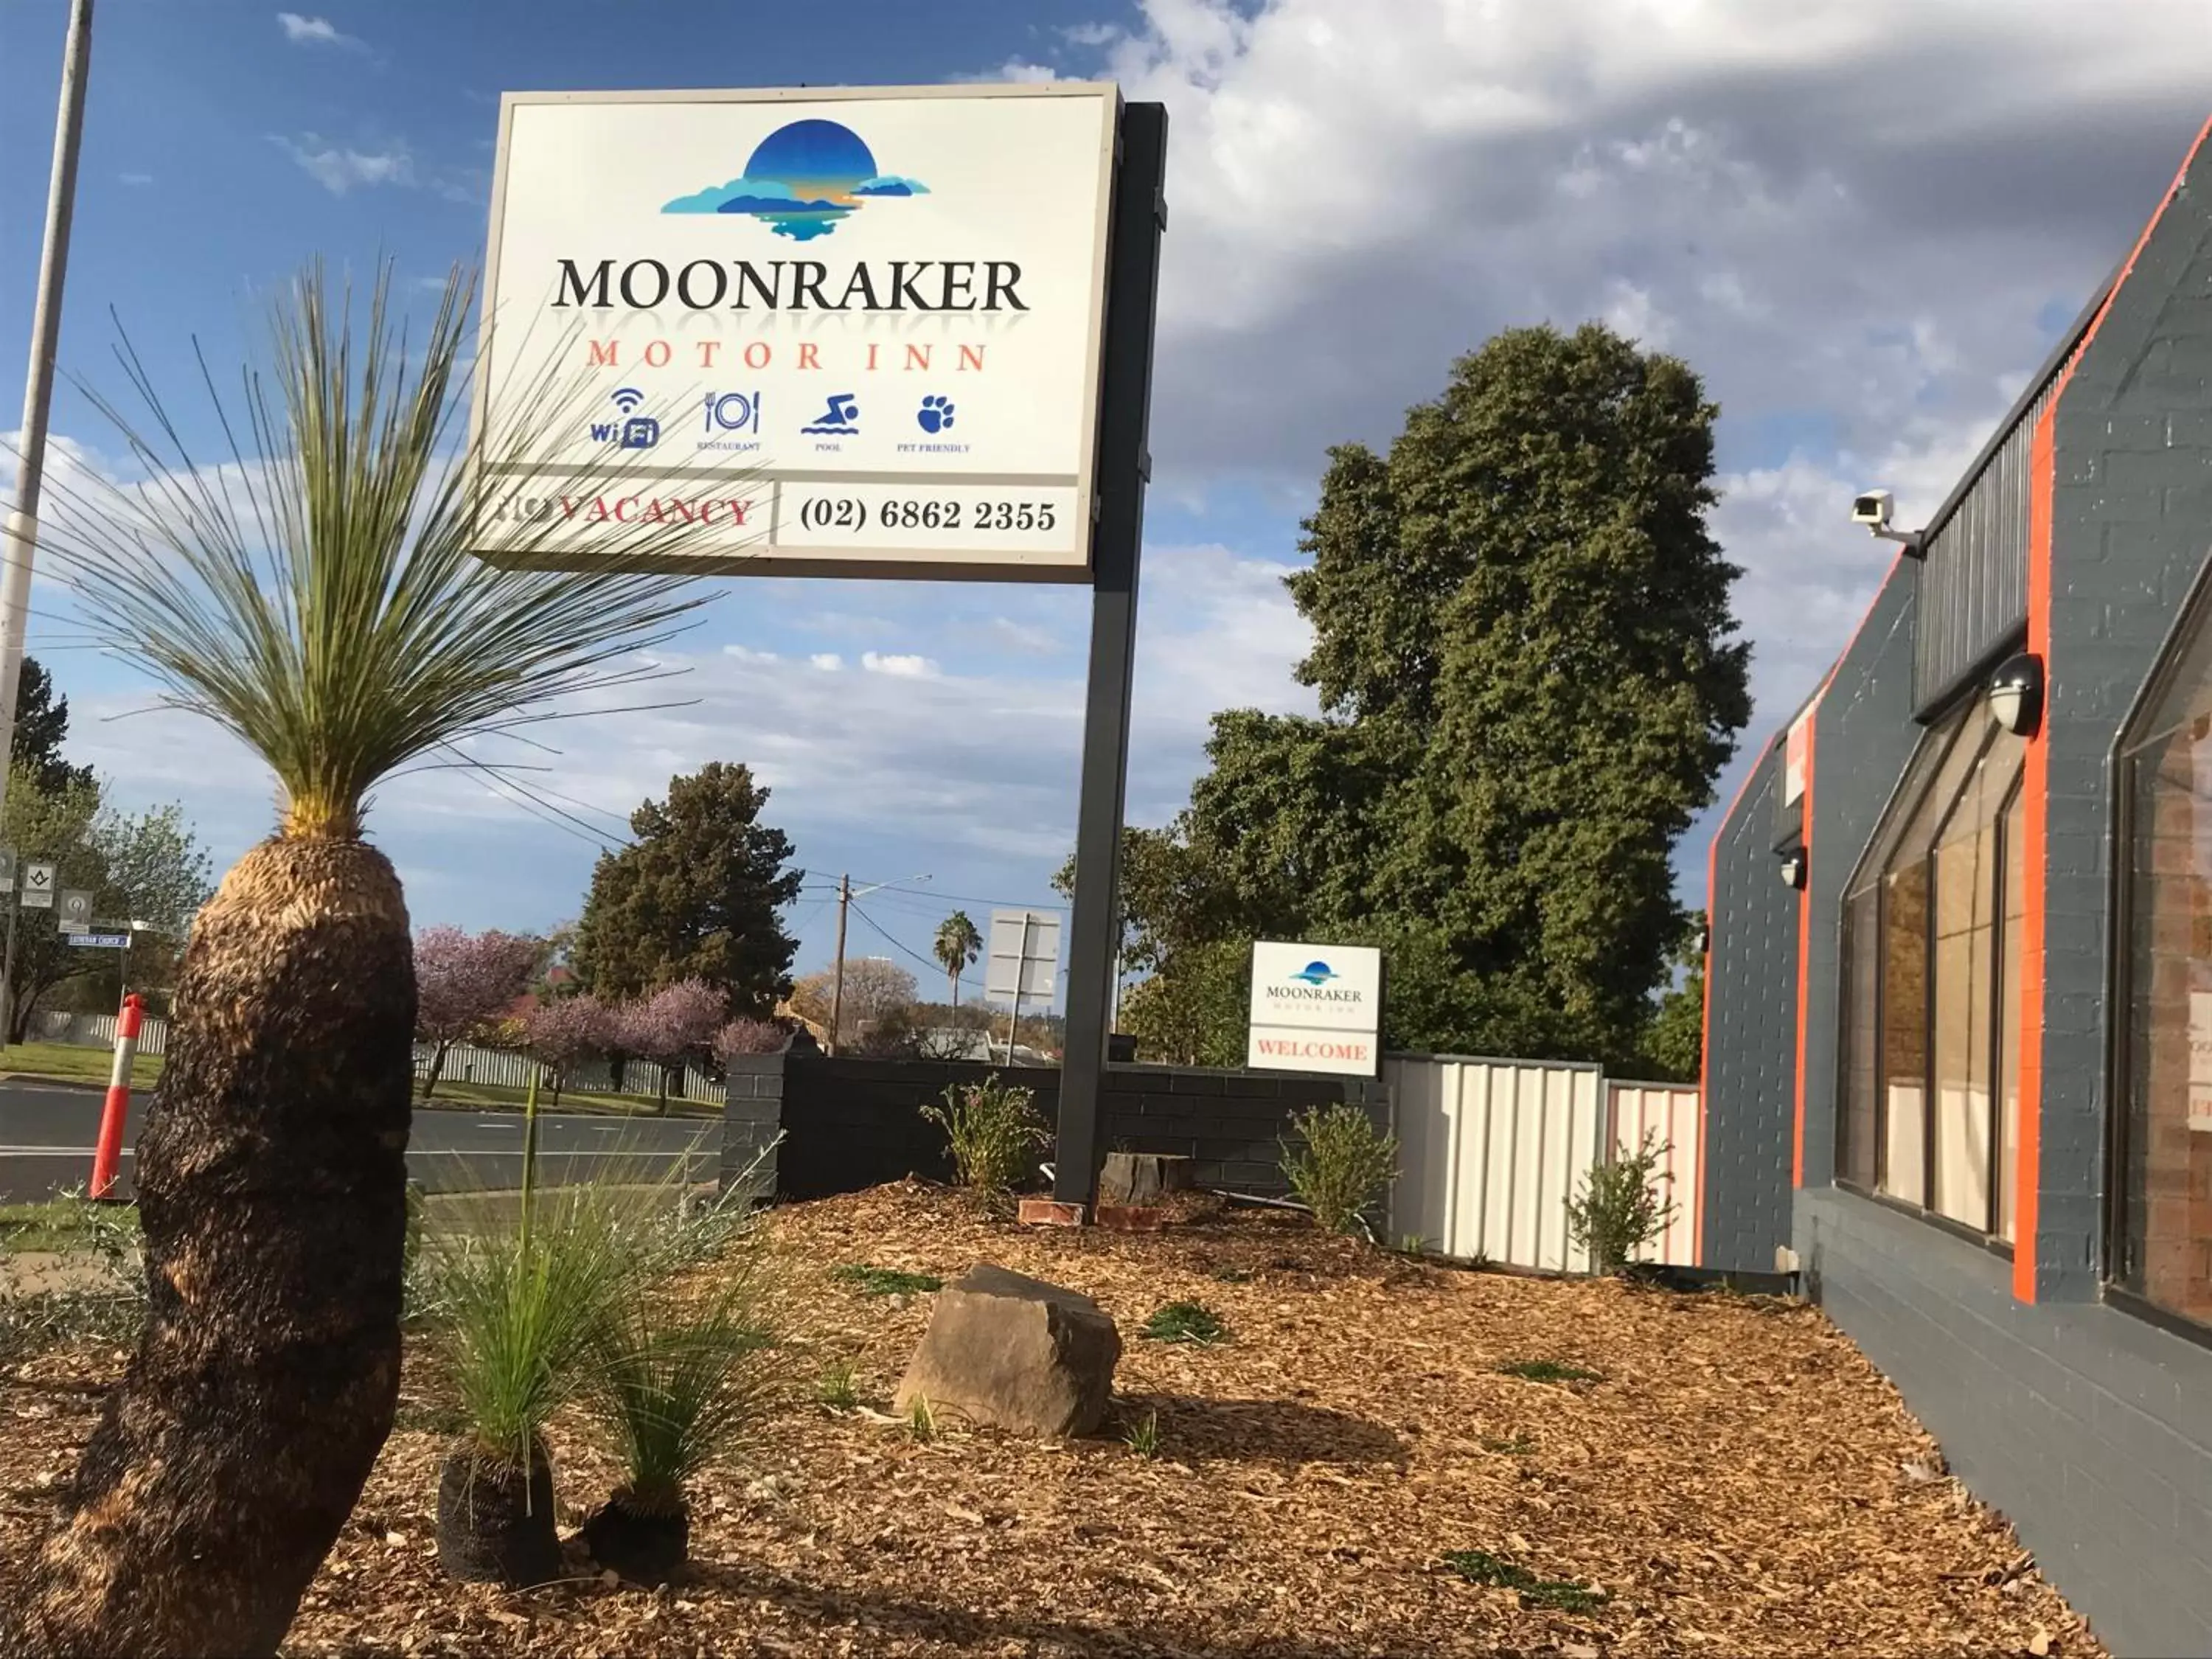 Property Building in Moonraker Motor Inn